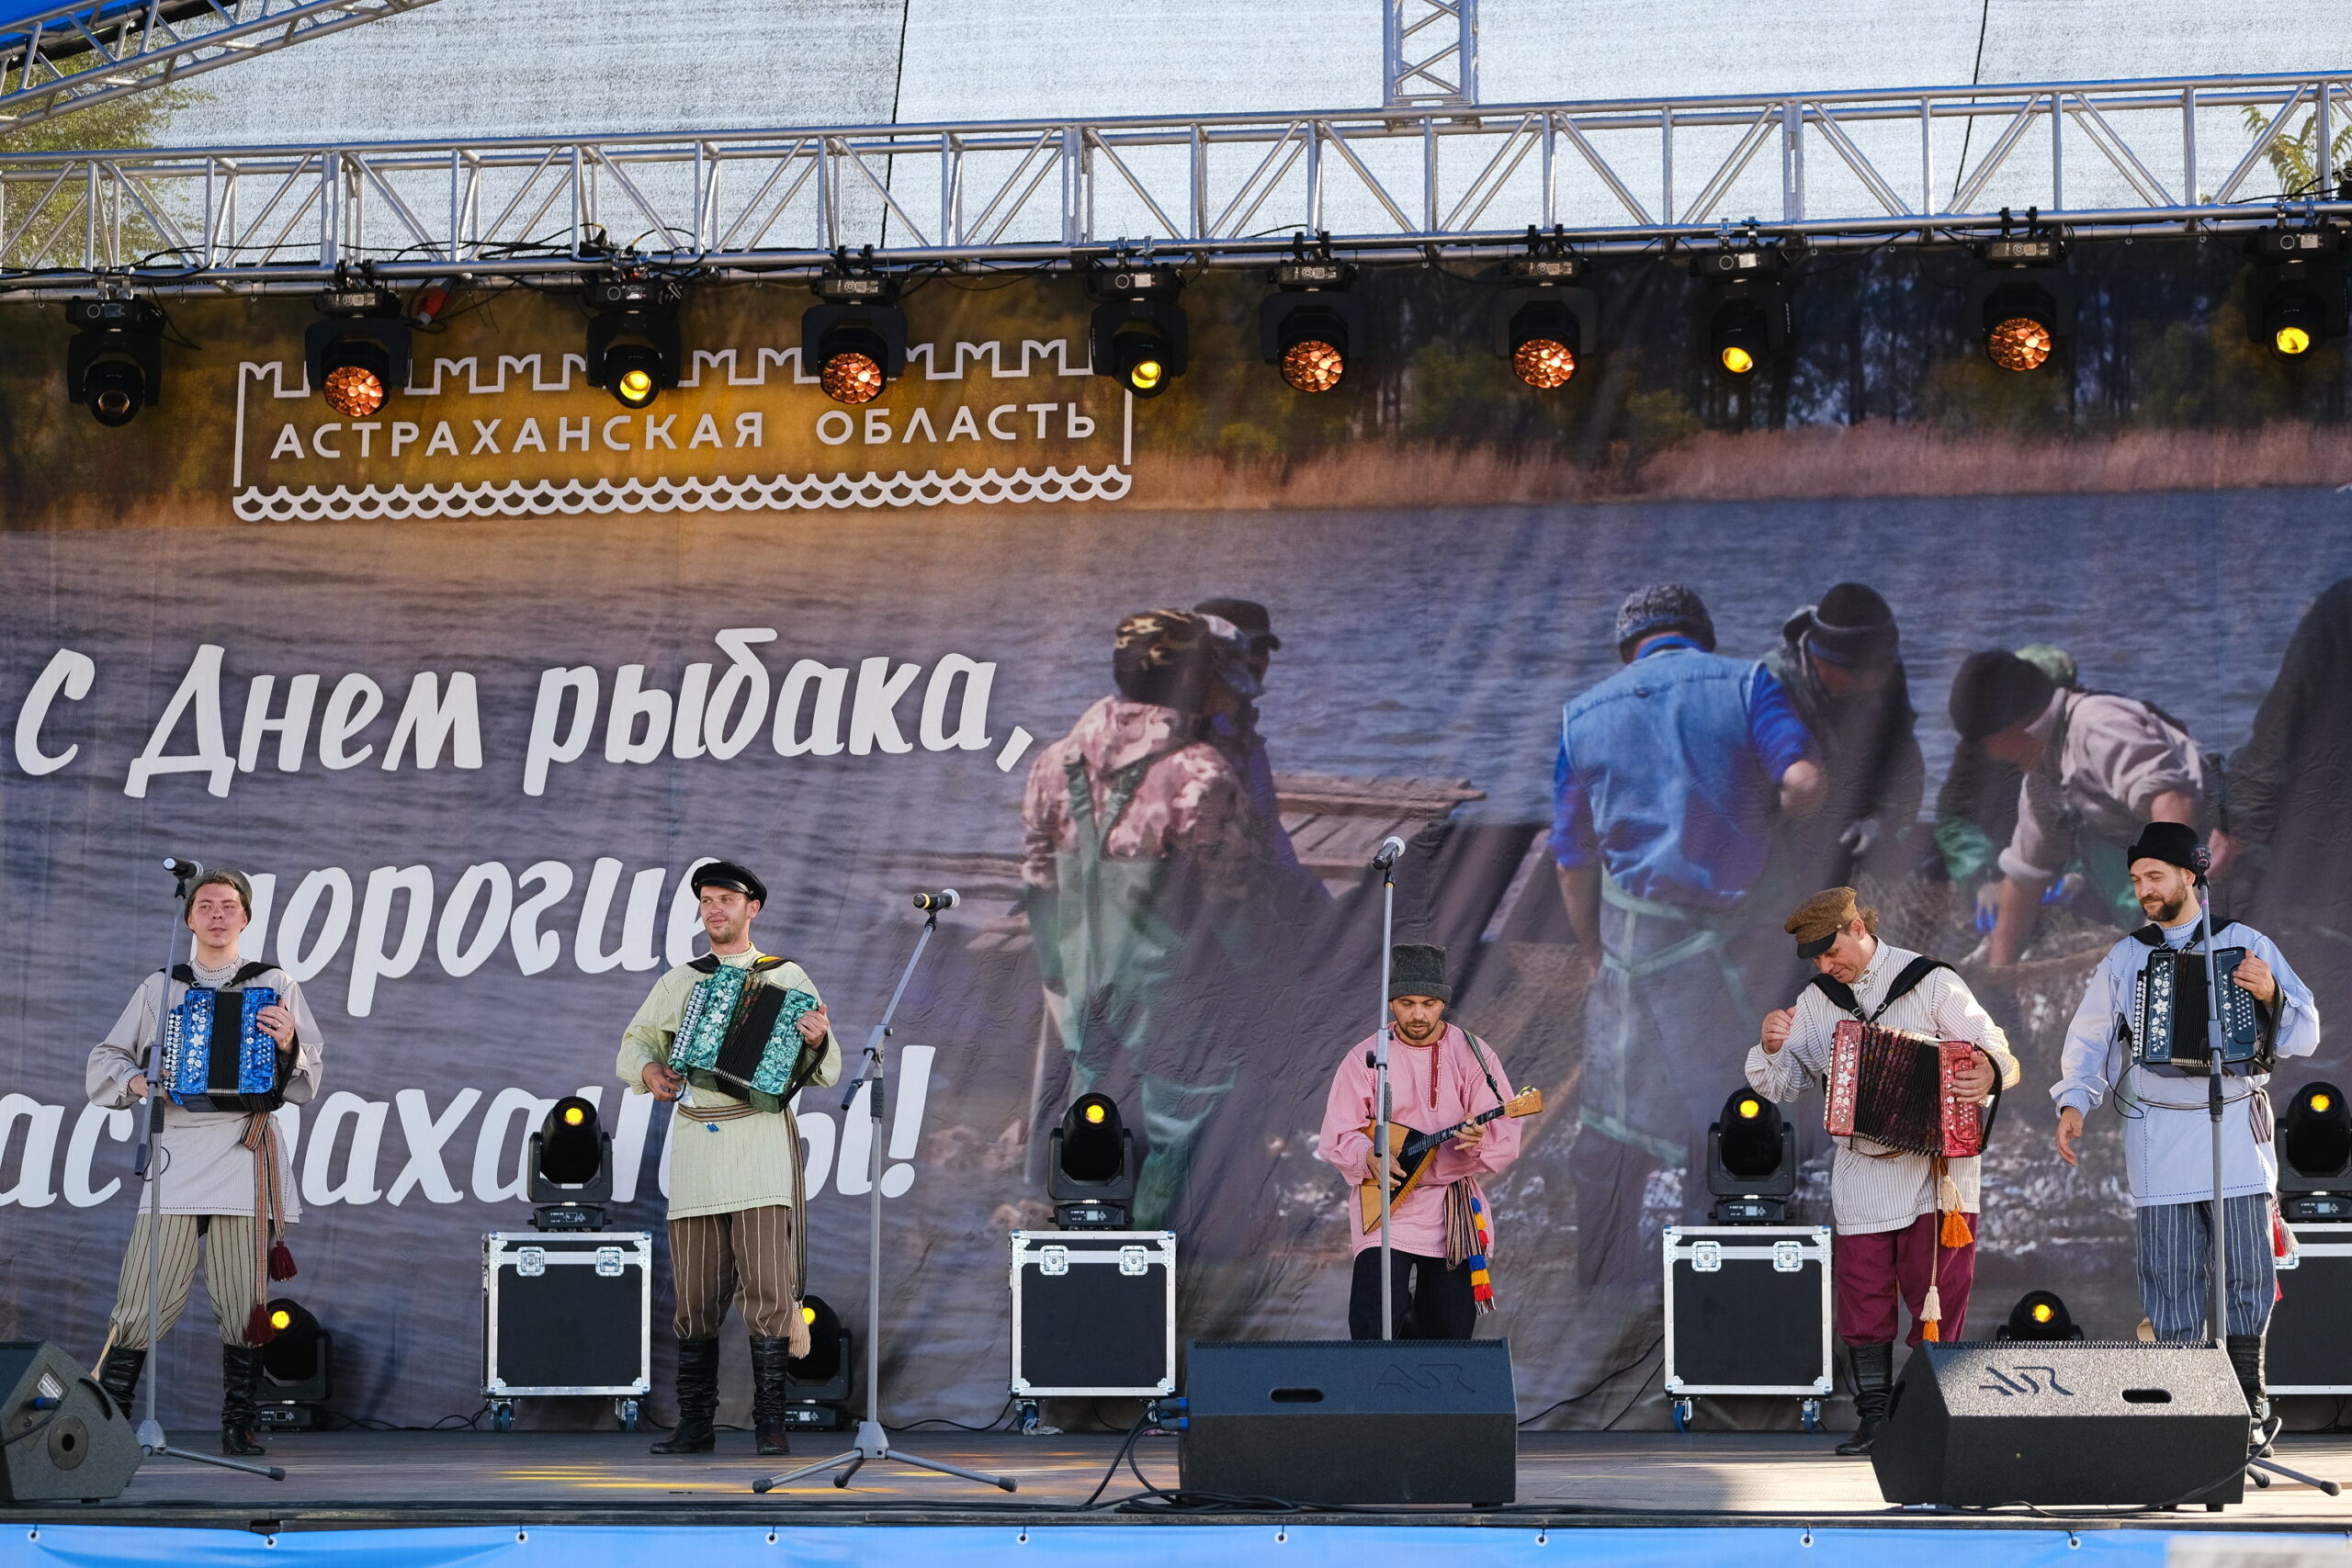 Областной центр народной культуры принял участие в праздновании Дня рыбака